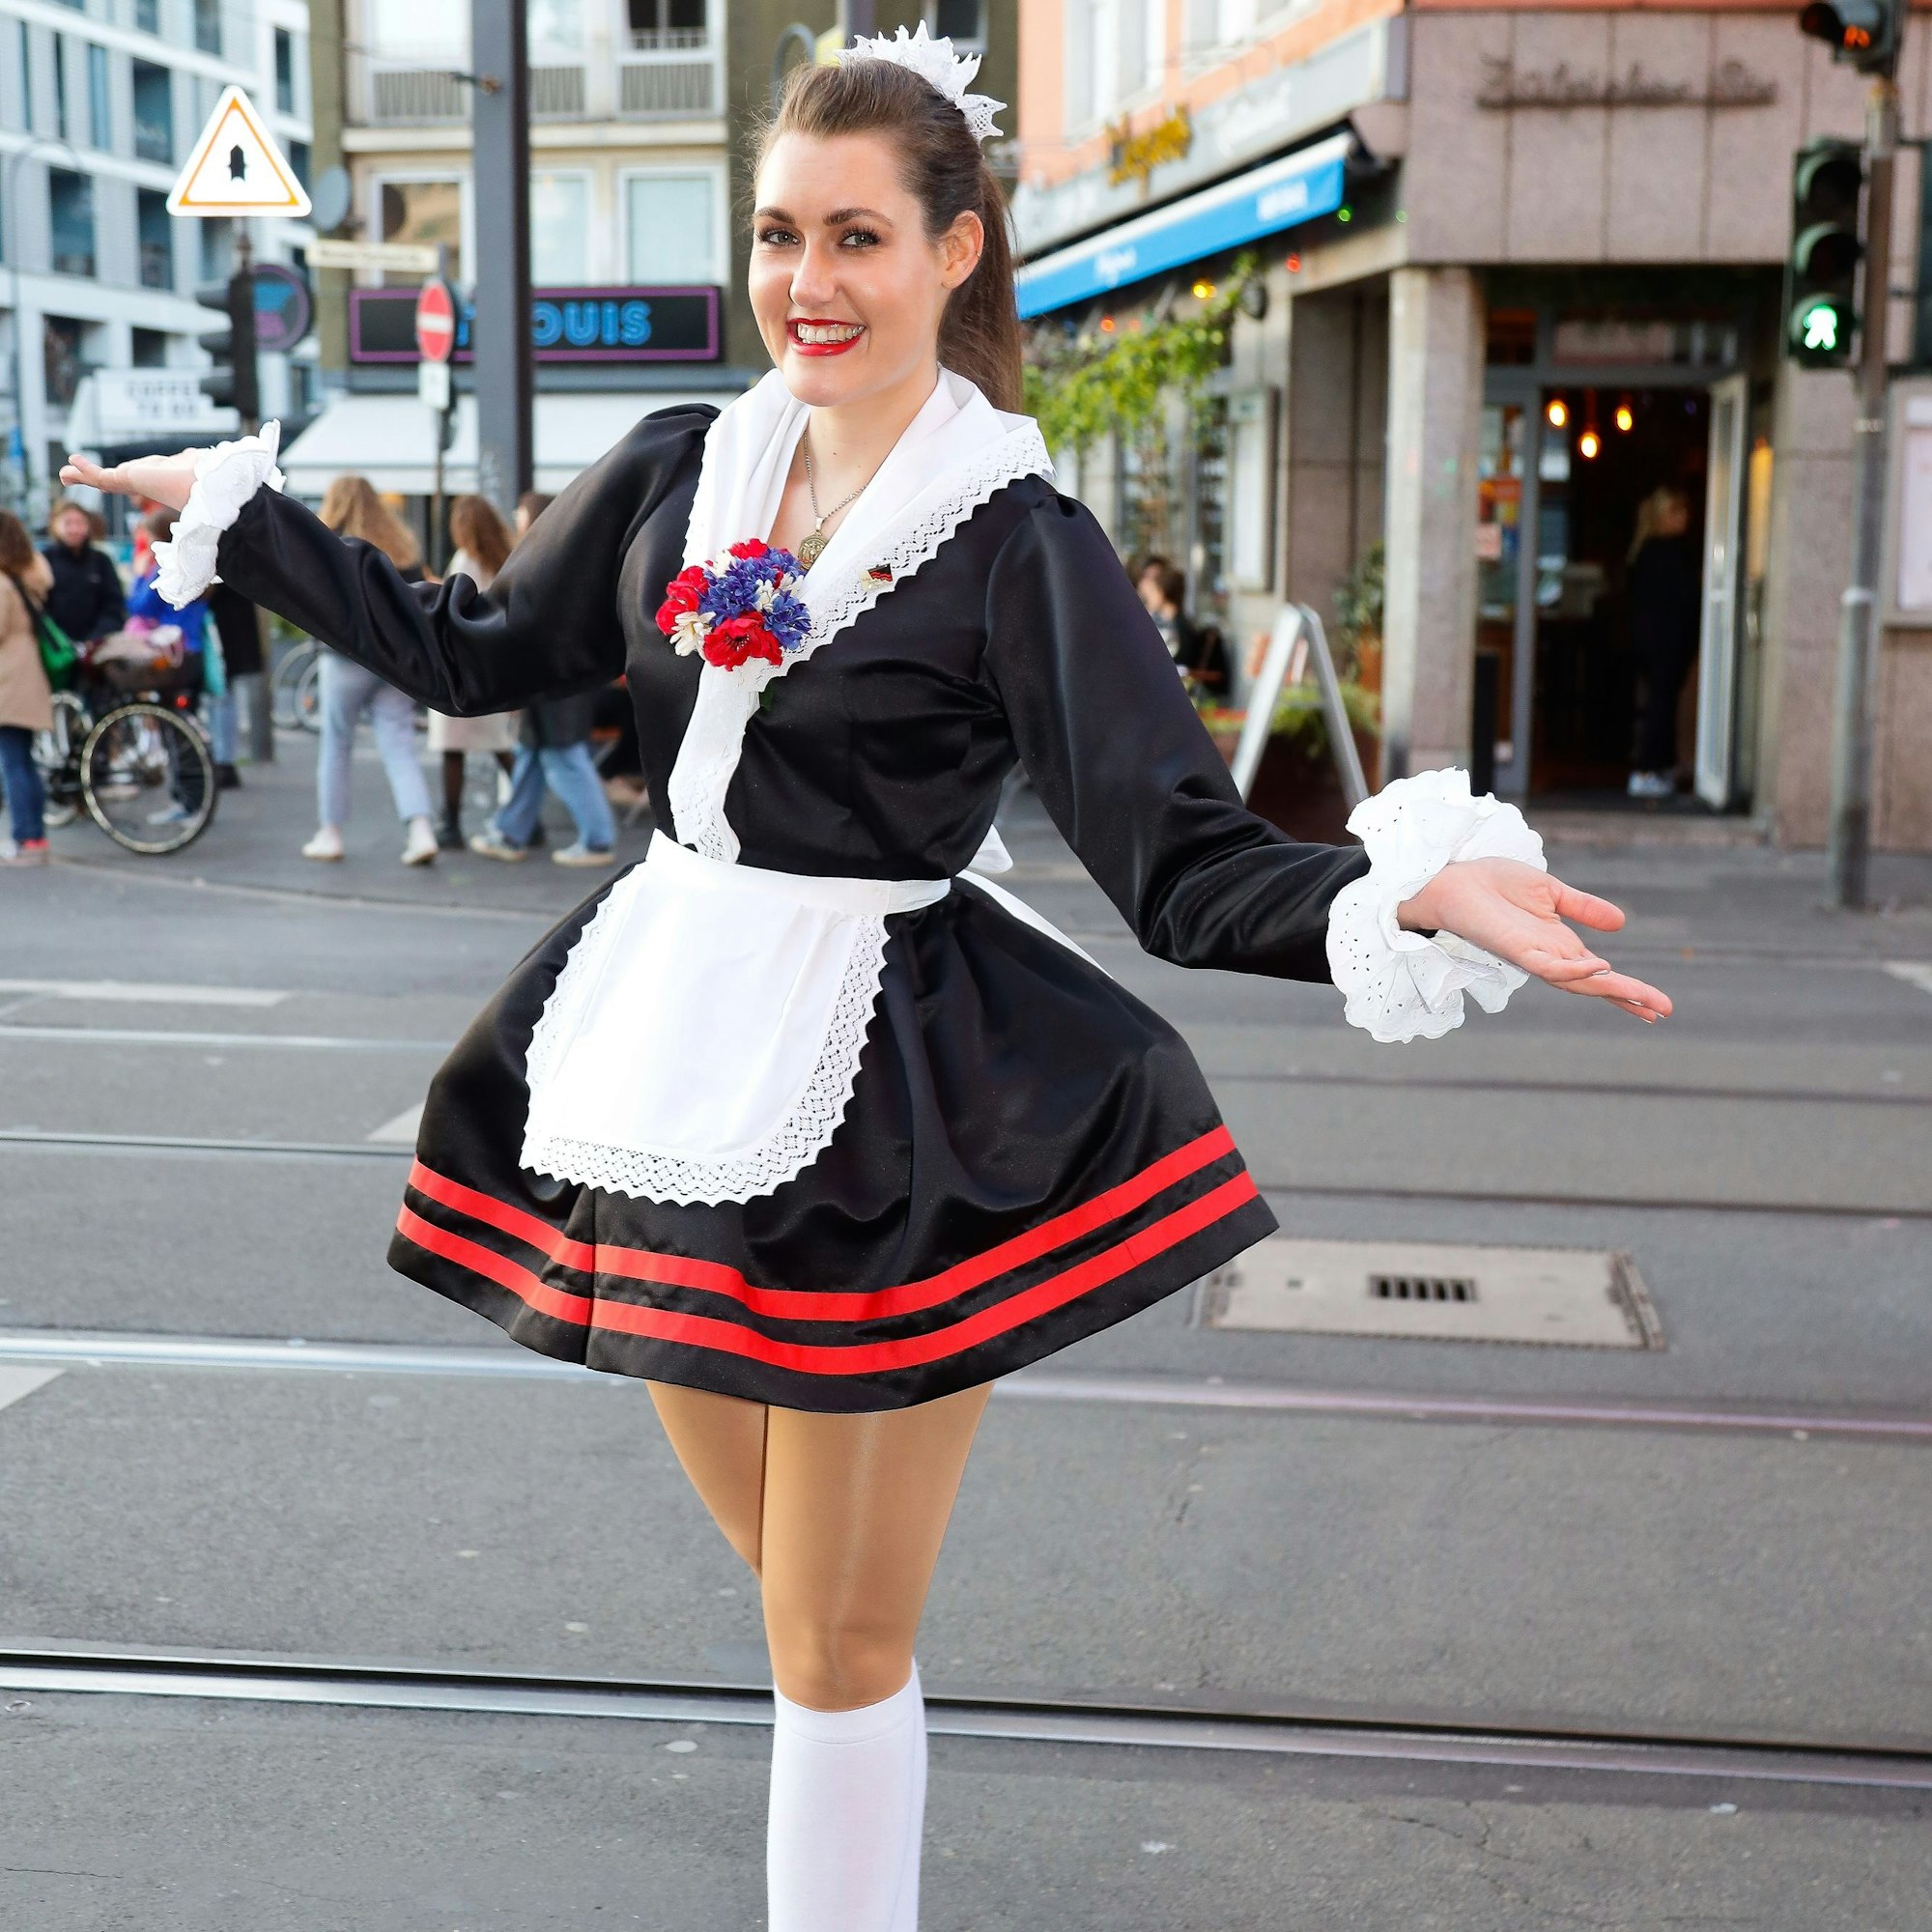 Lena Berger im Kostüm der Hellige Knäächte un Mägde, einer Tanzgruppe im Kölner Karneval. Fotografiert auf der Zülpicher Straße.